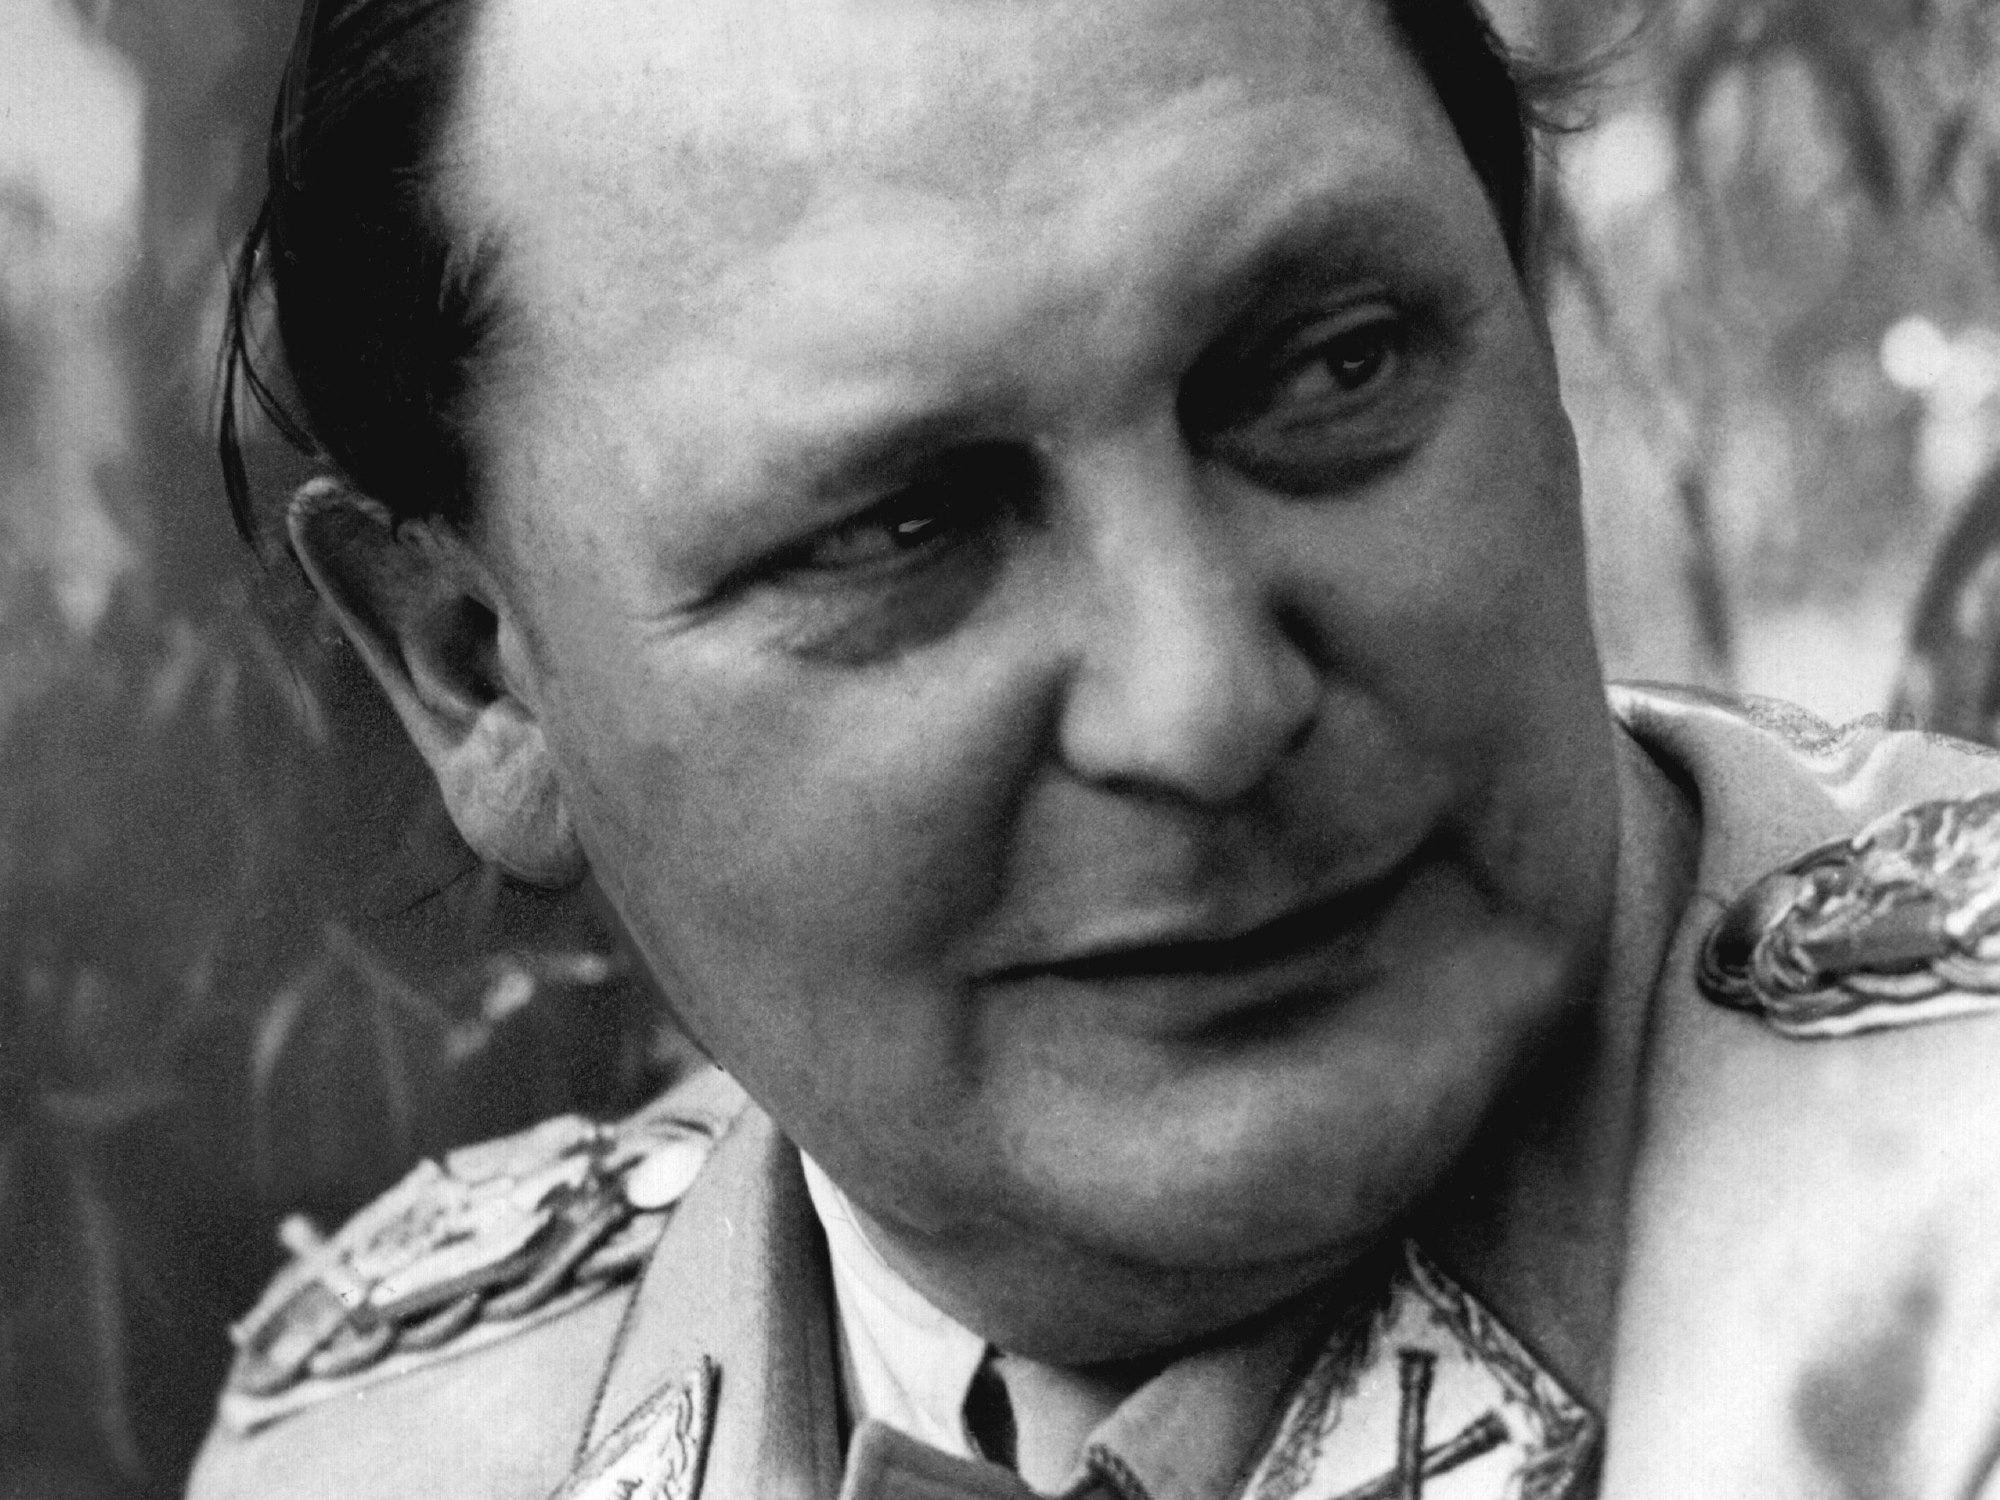 Reichsmarschall Hermann Göring am 11.05.1945 bei einem Presseinterview nach seiner Gefangennahme durch die Amerikaner.